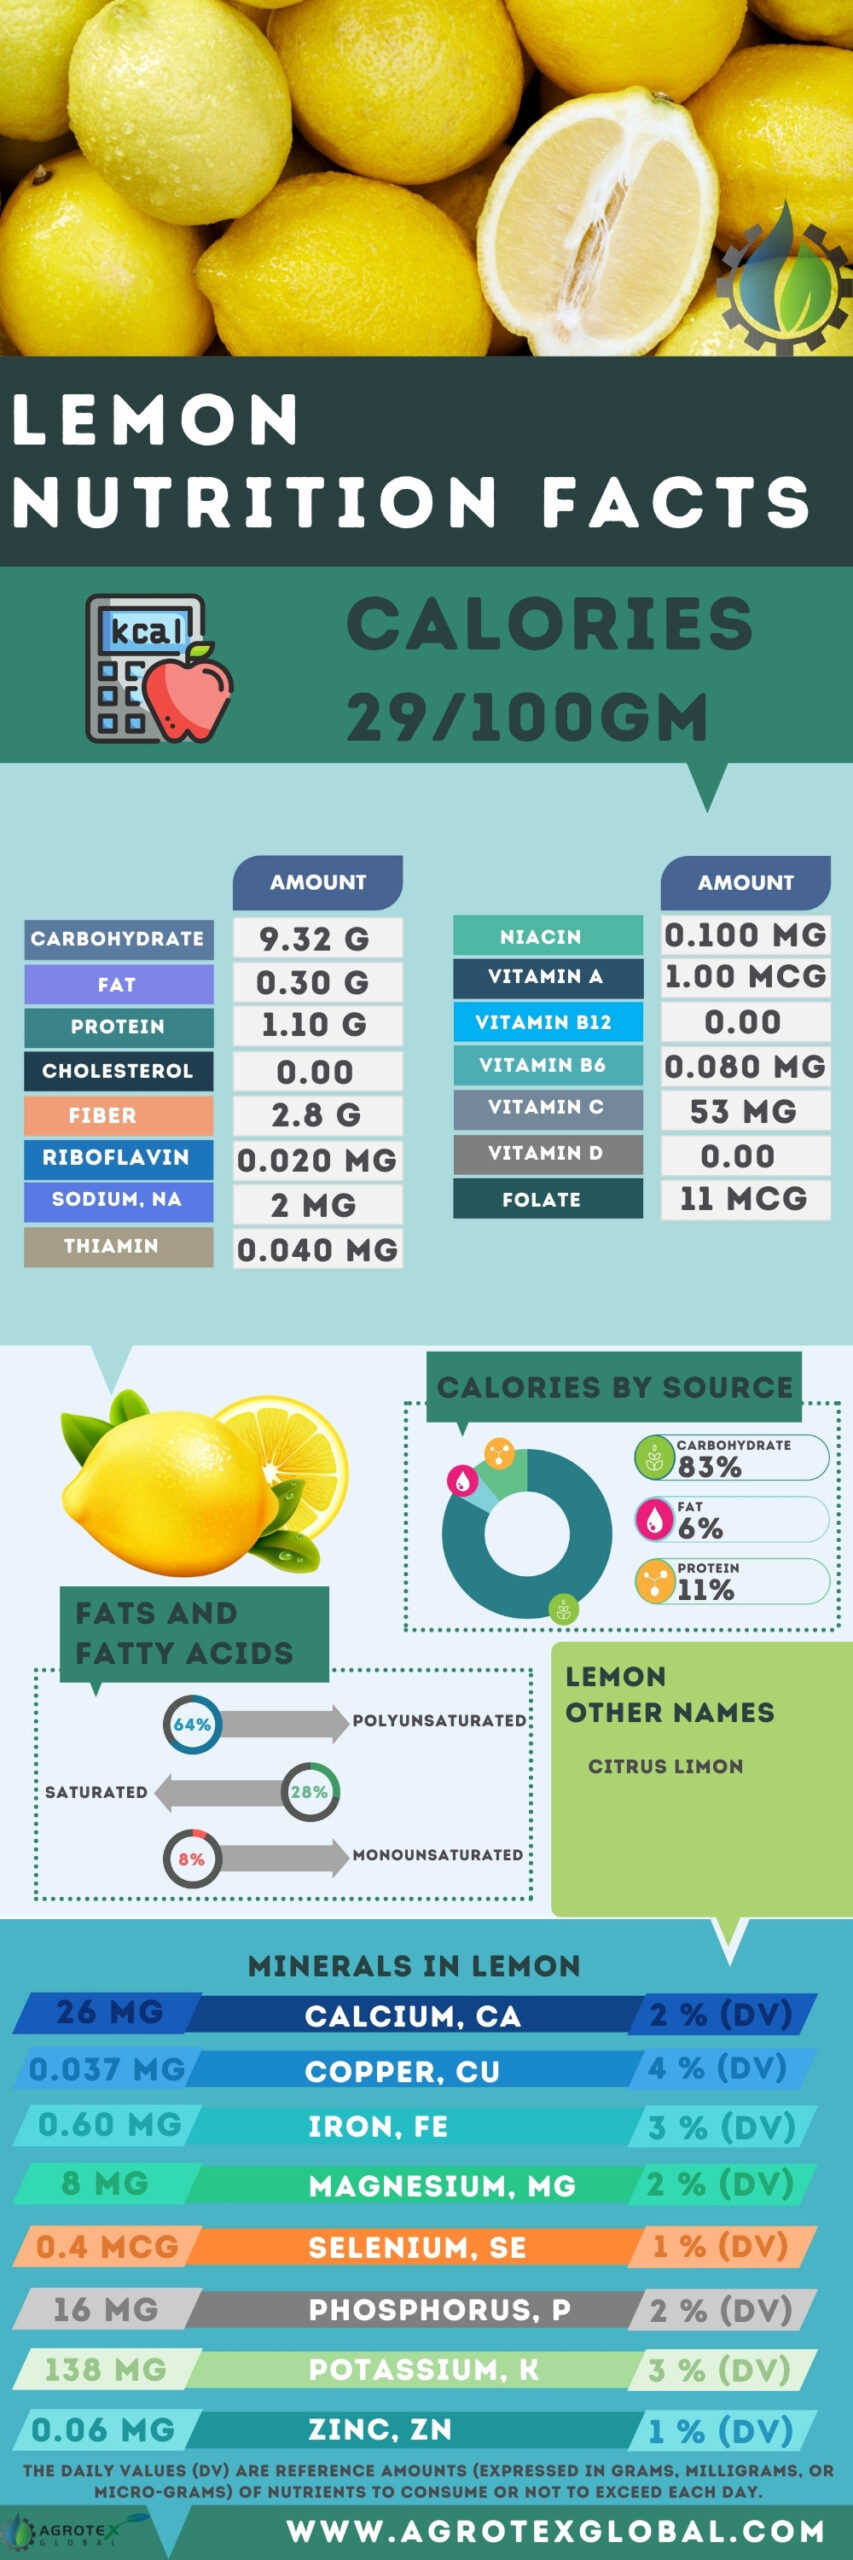 Lemon NUTRITION FACTS calorie chart infographic